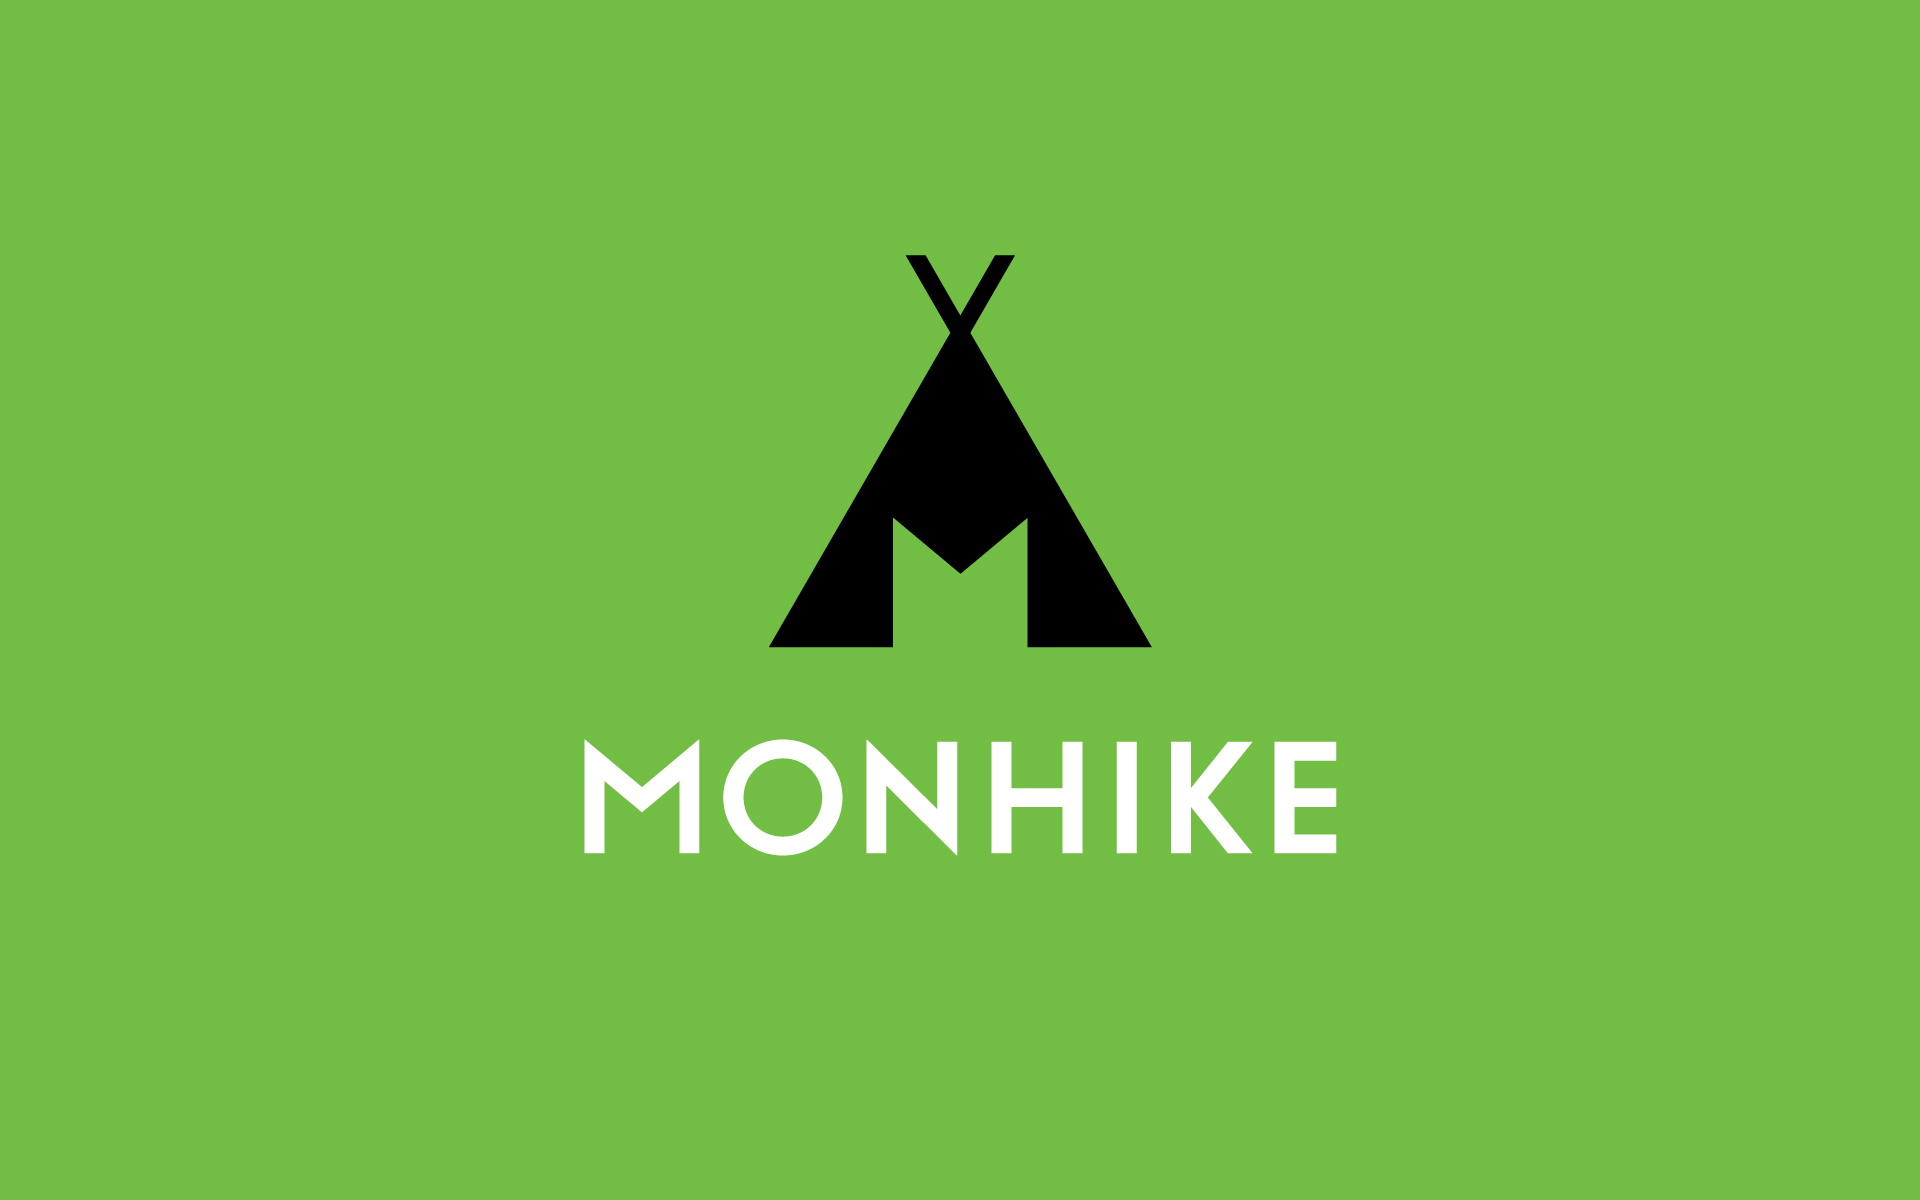 Monhike primary logo variations